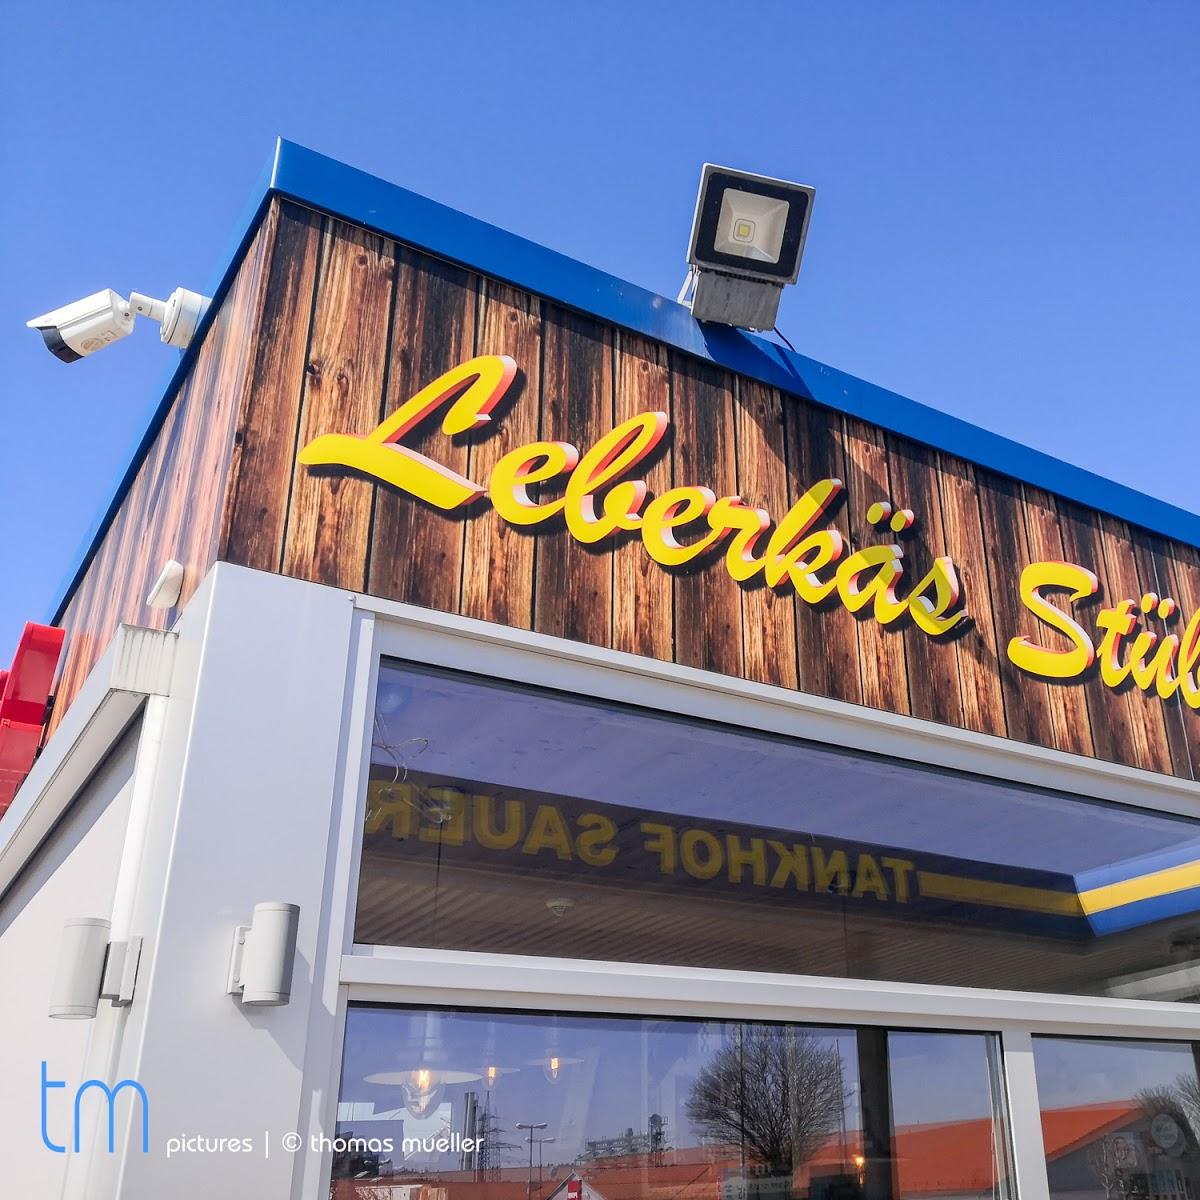 Restaurant "Leberkas Stüberl" in  Sauerlach